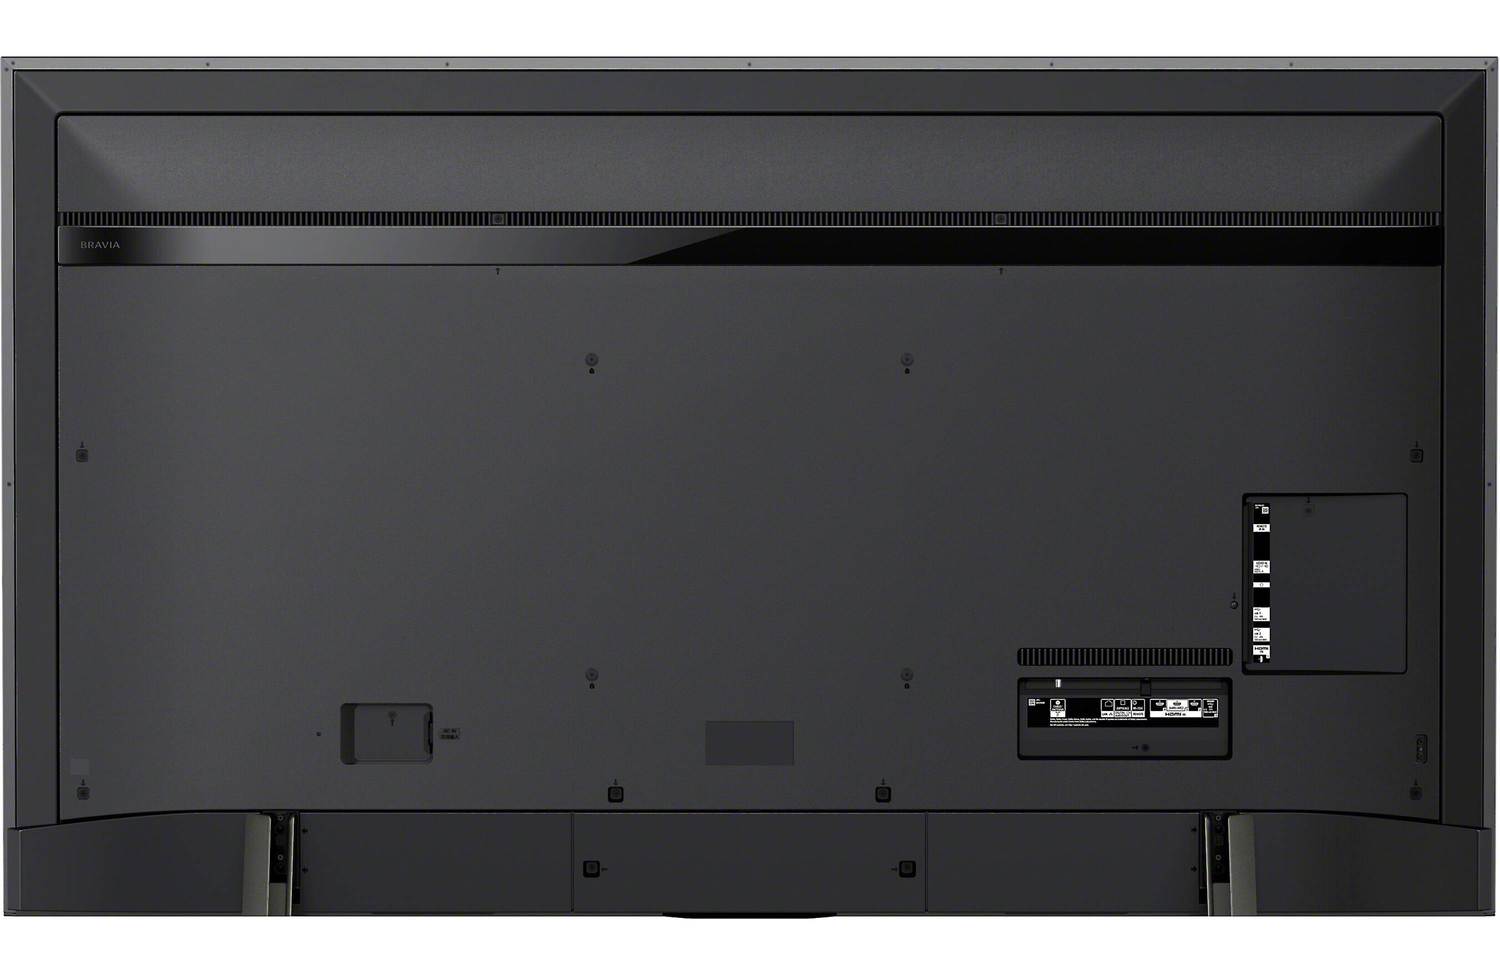 Sony XBR950H Rear Panel